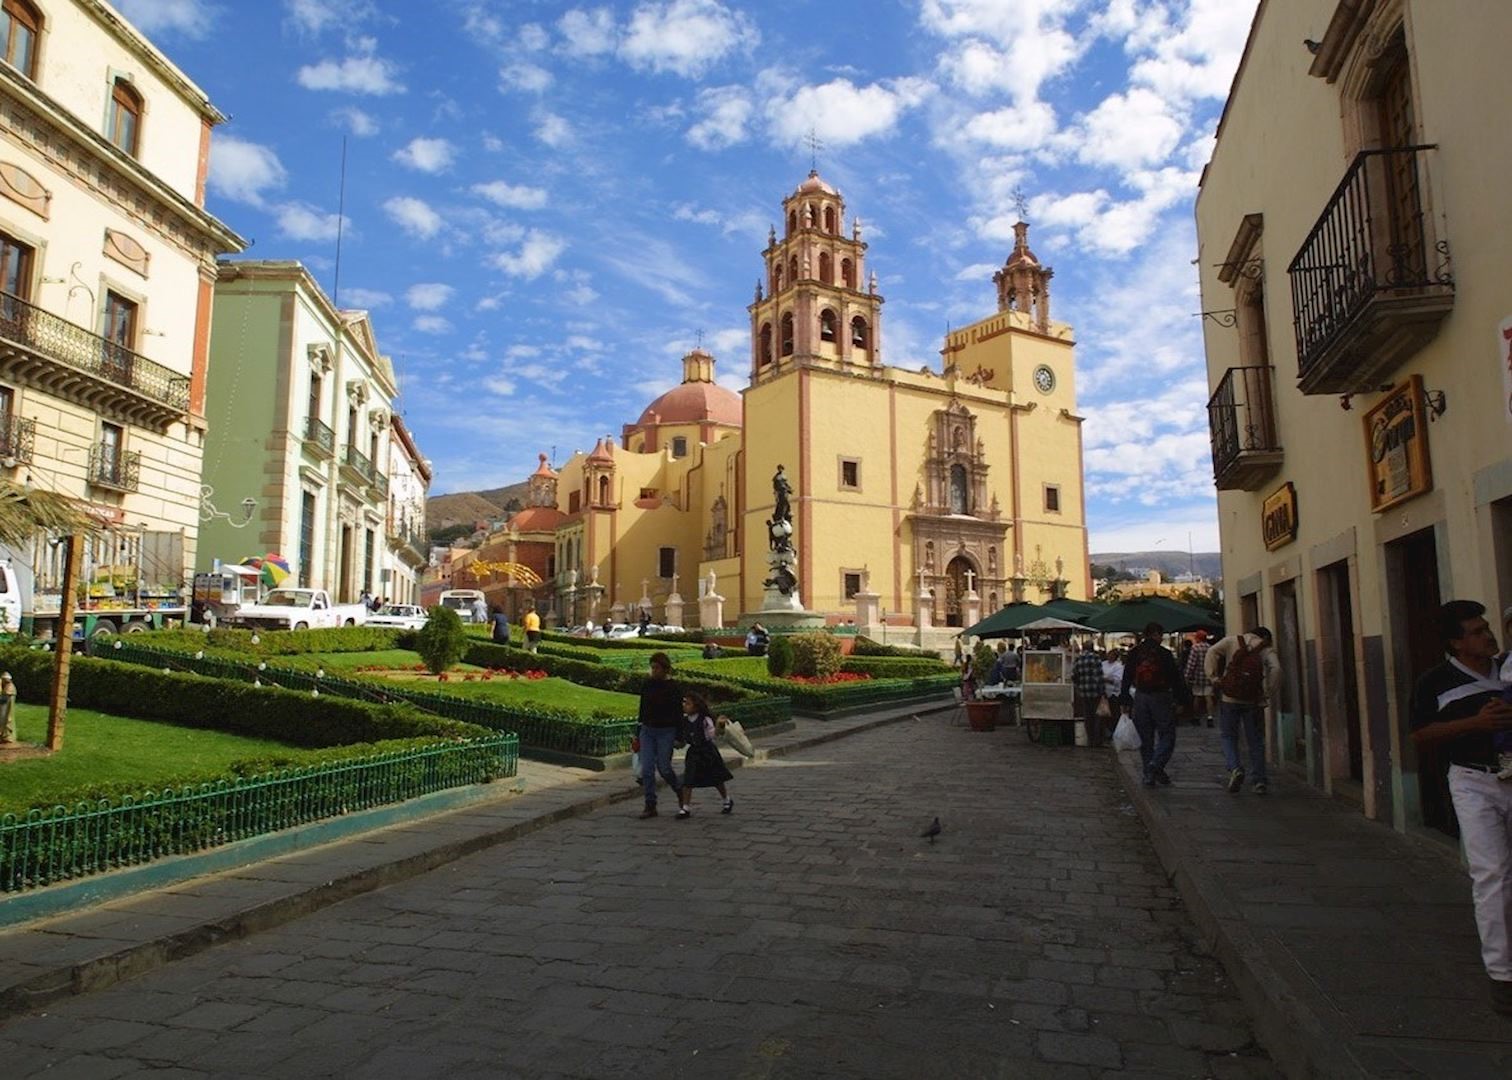 El Equipo Fotográfico Ideal para Capturar la Belleza de Querétaro